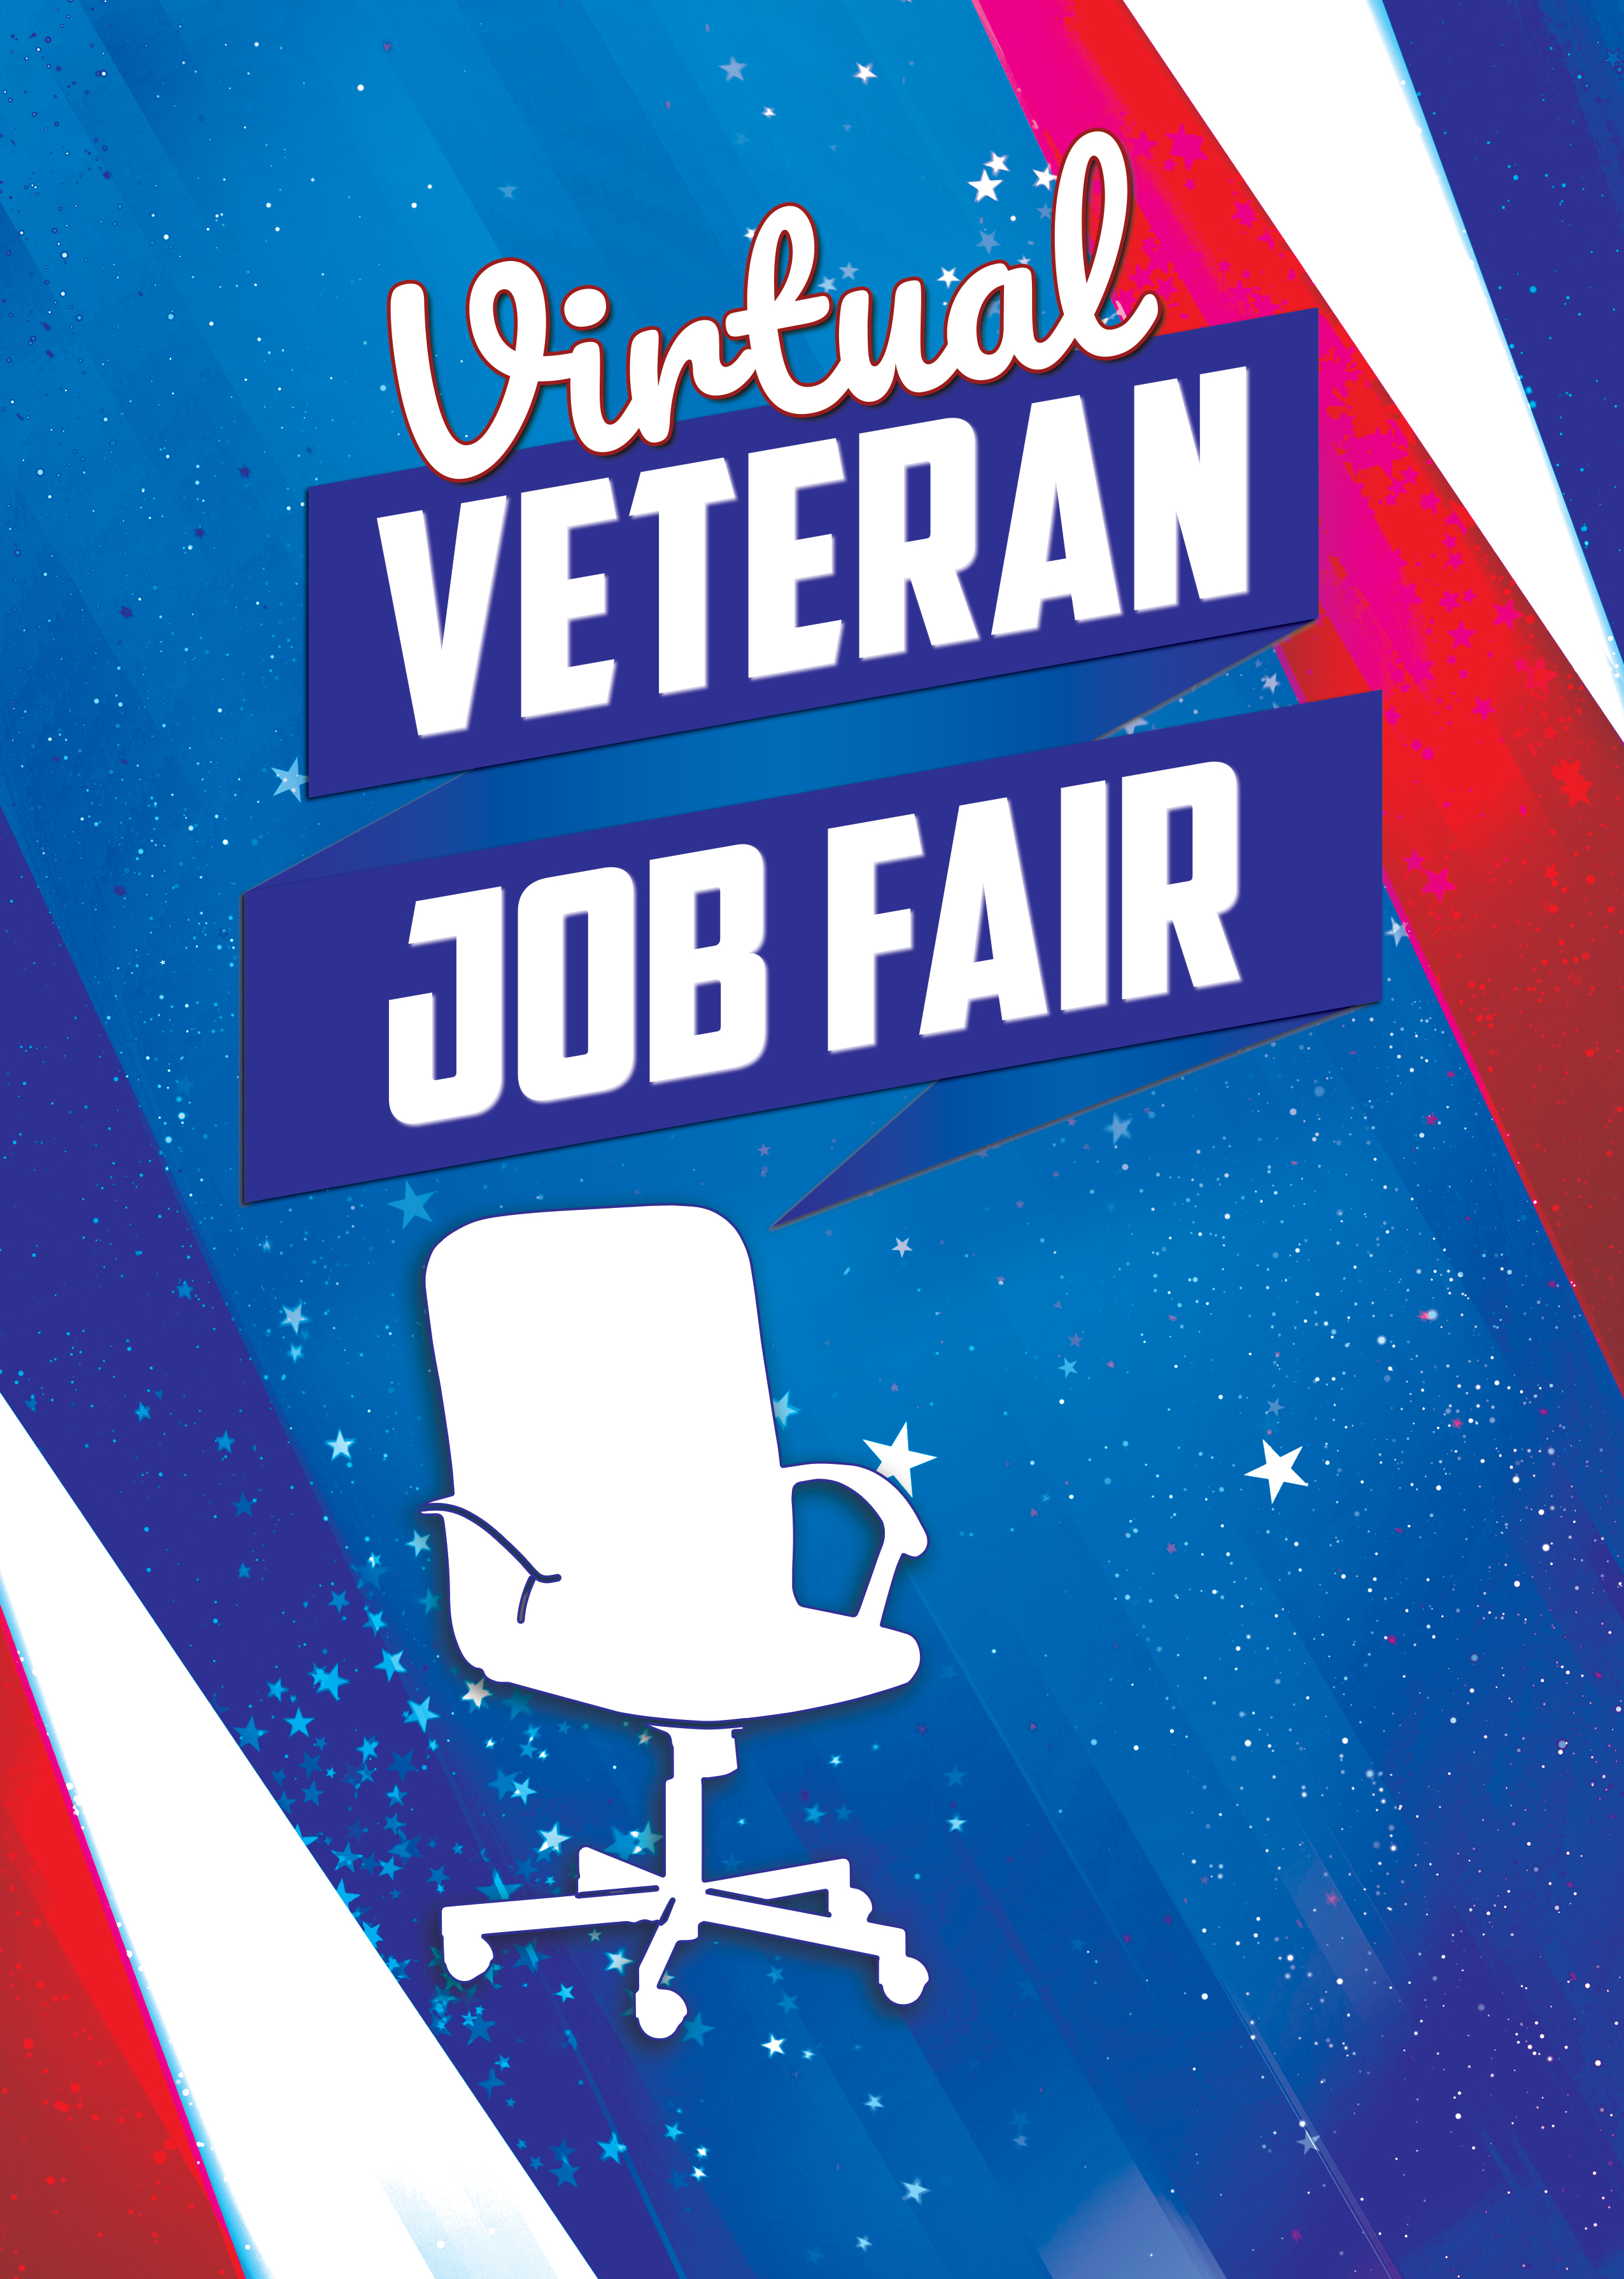 Virtual Job Fair-Website Art